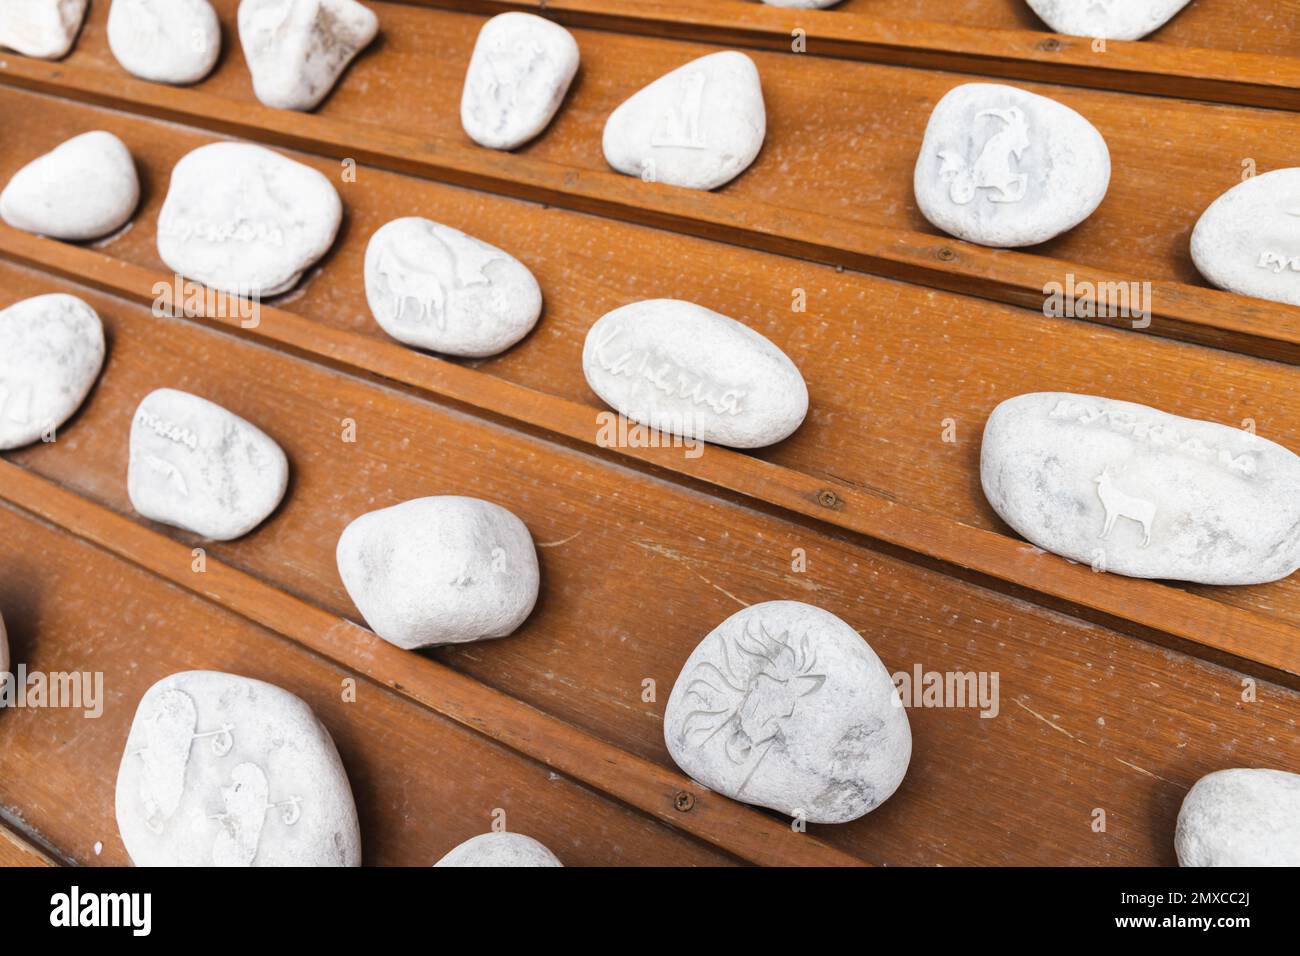 Ruskeala, Russland - 12. Juni 2021: Weiße Marmorsteine mit dekorativen Schnitzereien lagen auf einer hölzernen Theke mit Souvenirläden. Text steht für Ruskeala-Städtename Stockfoto